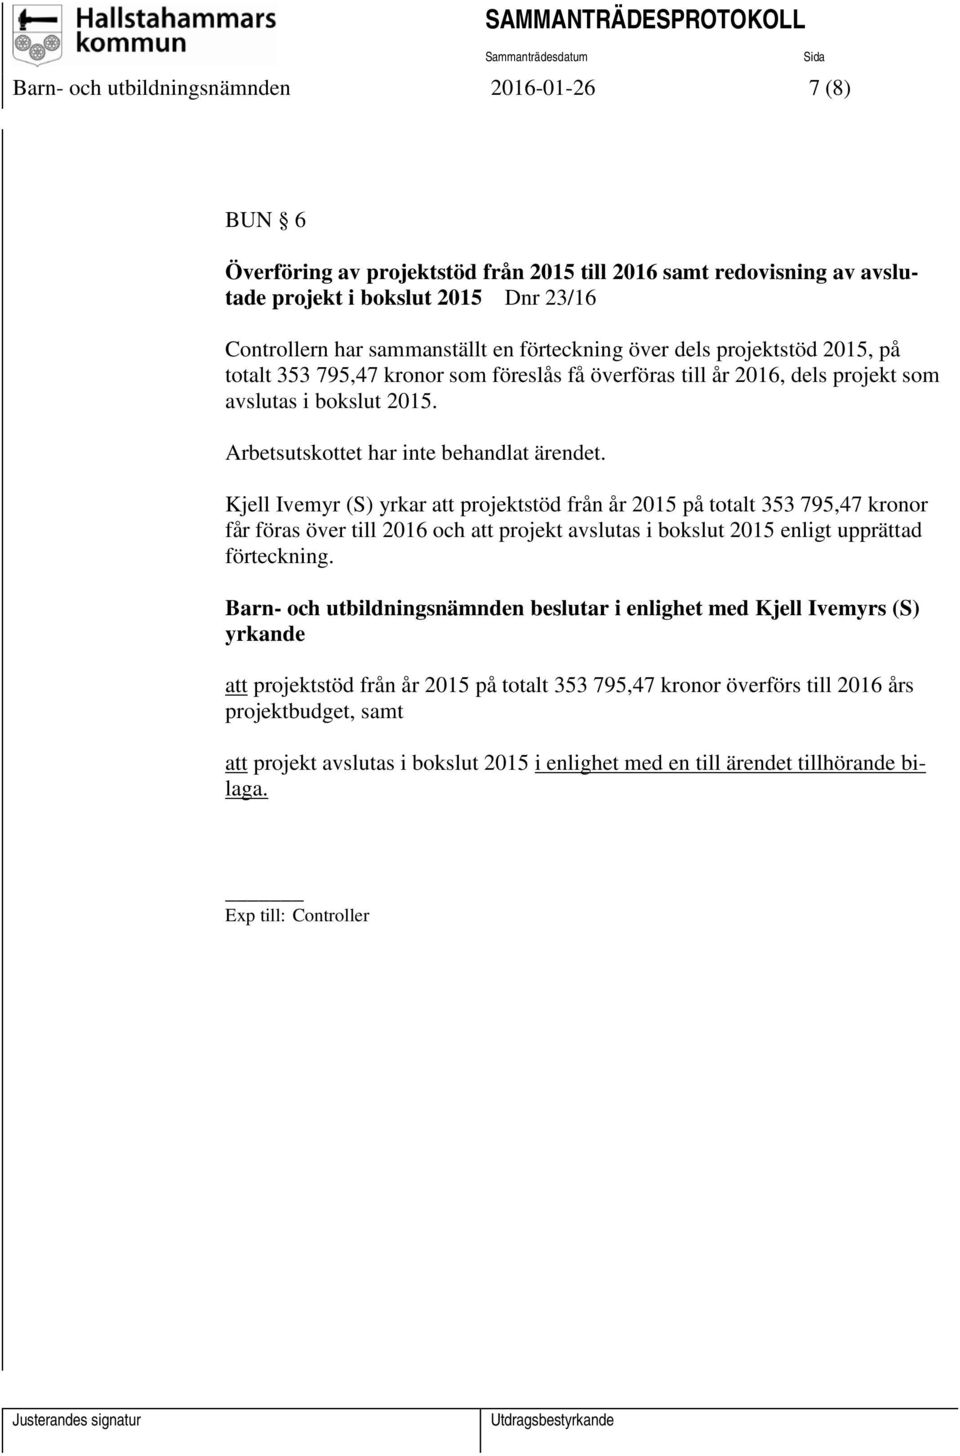 Kjell Ivemyr (S) yrkar att projektstöd från år 2015 på totalt 353 795,47 kronor får föras över till 2016 och att projekt avslutas i bokslut 2015 enligt upprättad förteckning.